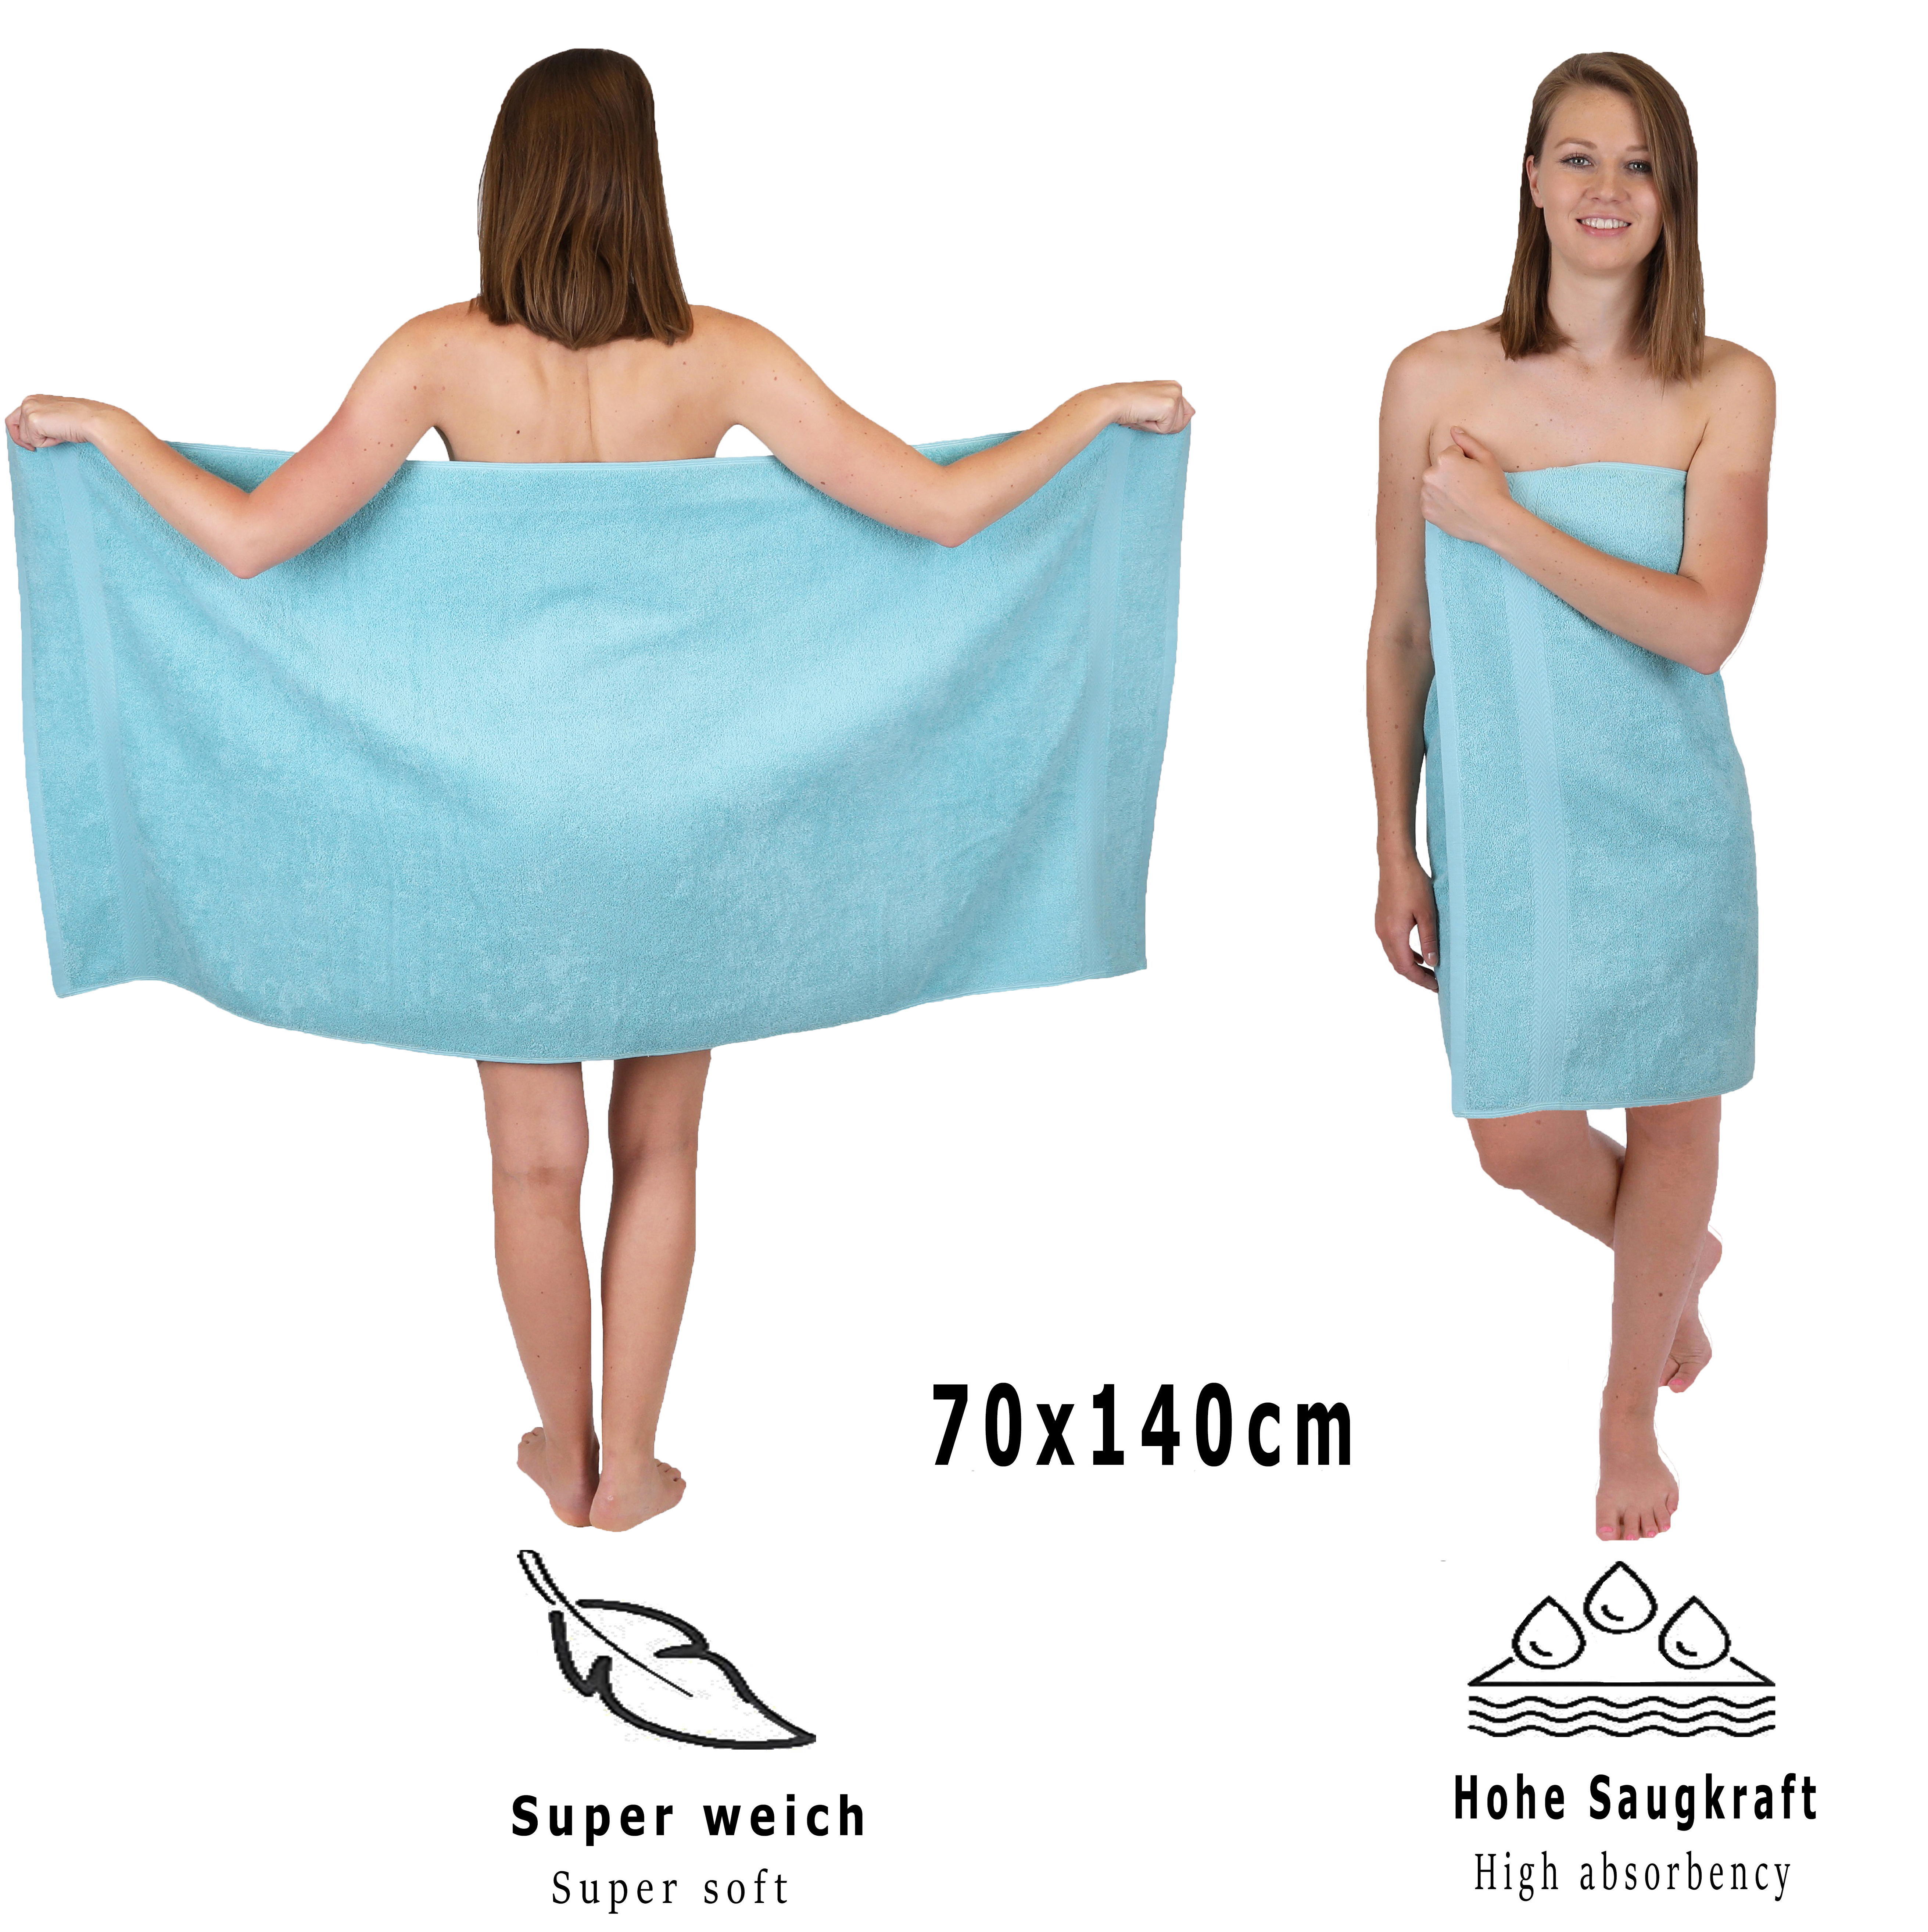 Betz 6 toallas de baÃ±o PREMIUM 100% algodÃ³n 70x140 cm color azul ocÃ